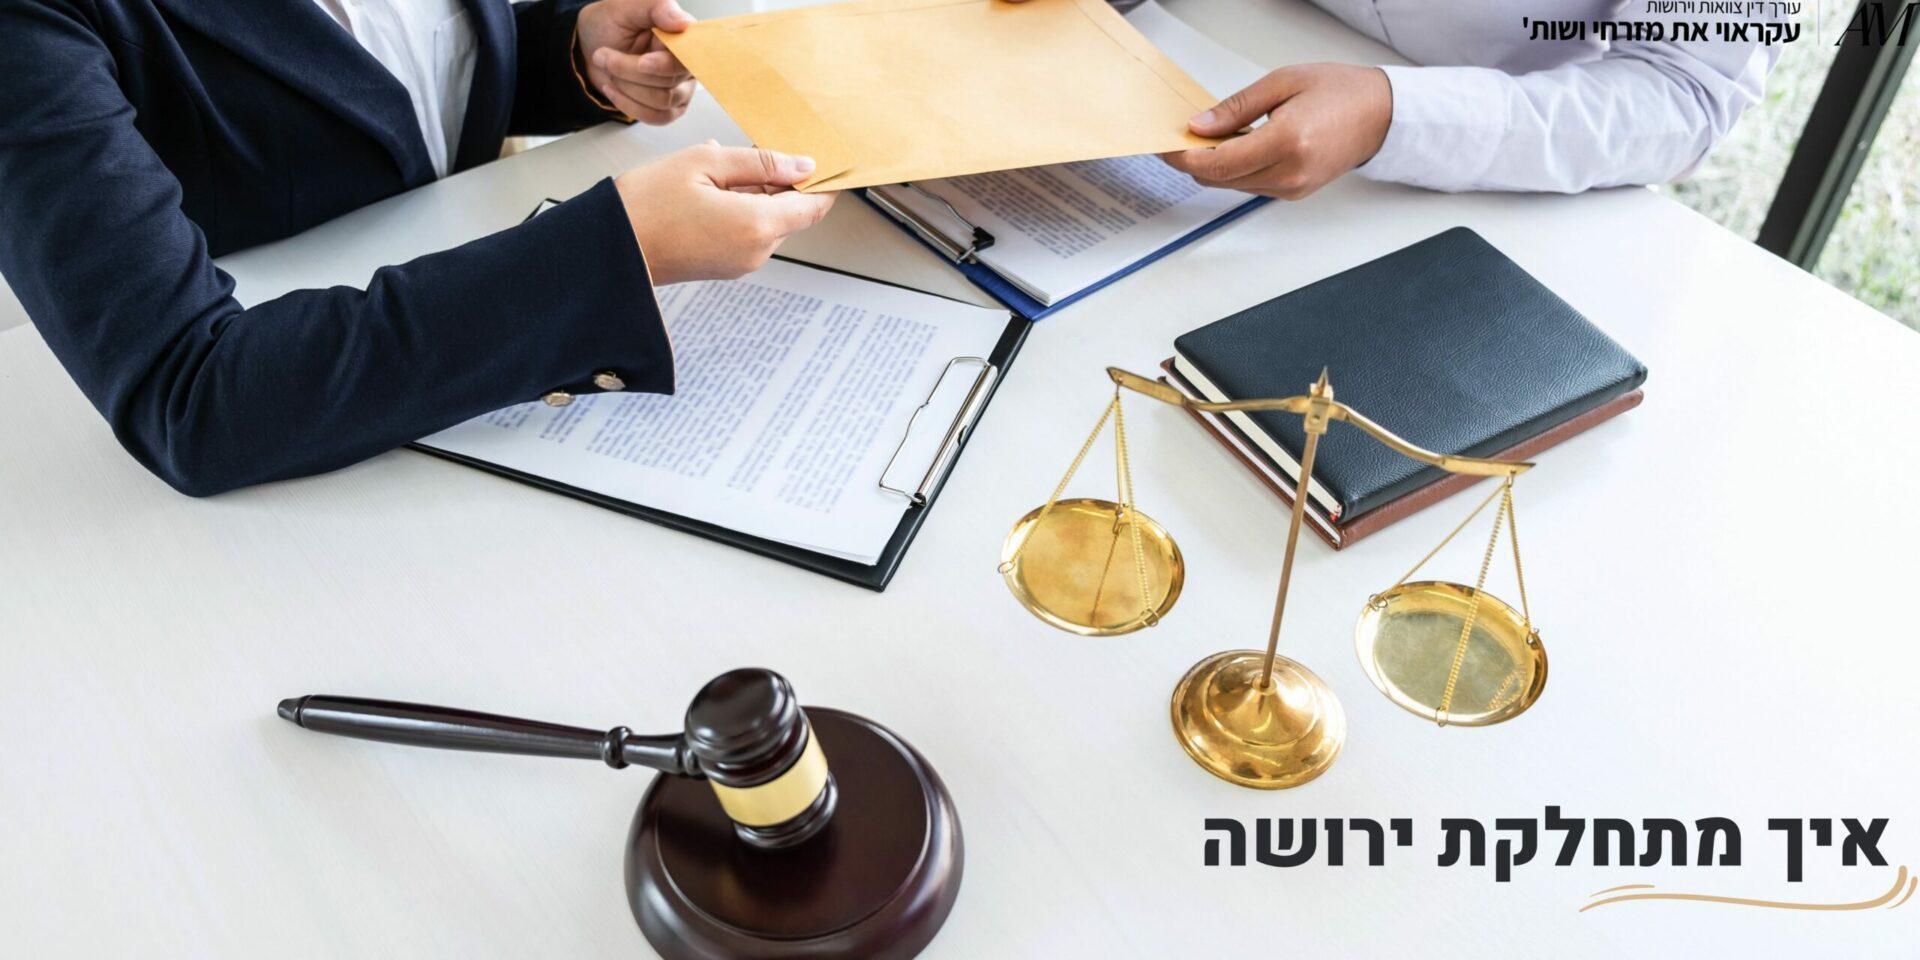 איך מתחלקת ירושה - עורכי דין עקראוי את מזרחי ושות'